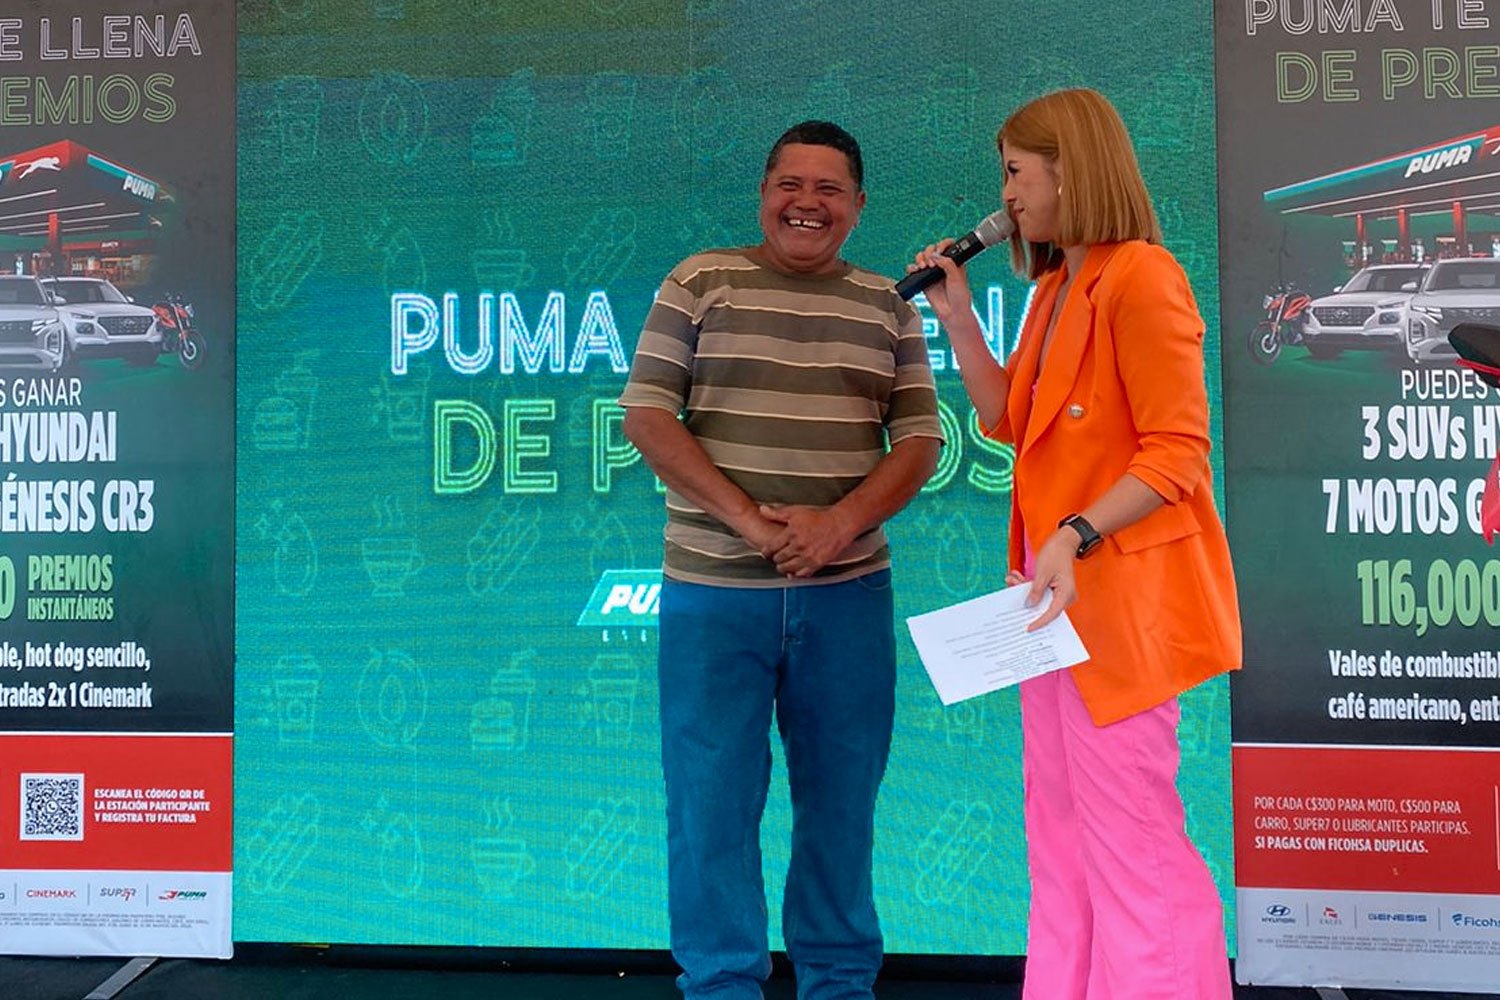 Foto: Puma te llena de premios entrega motocicleta Génesis CR3 al primer ganador oficial / Cortesía